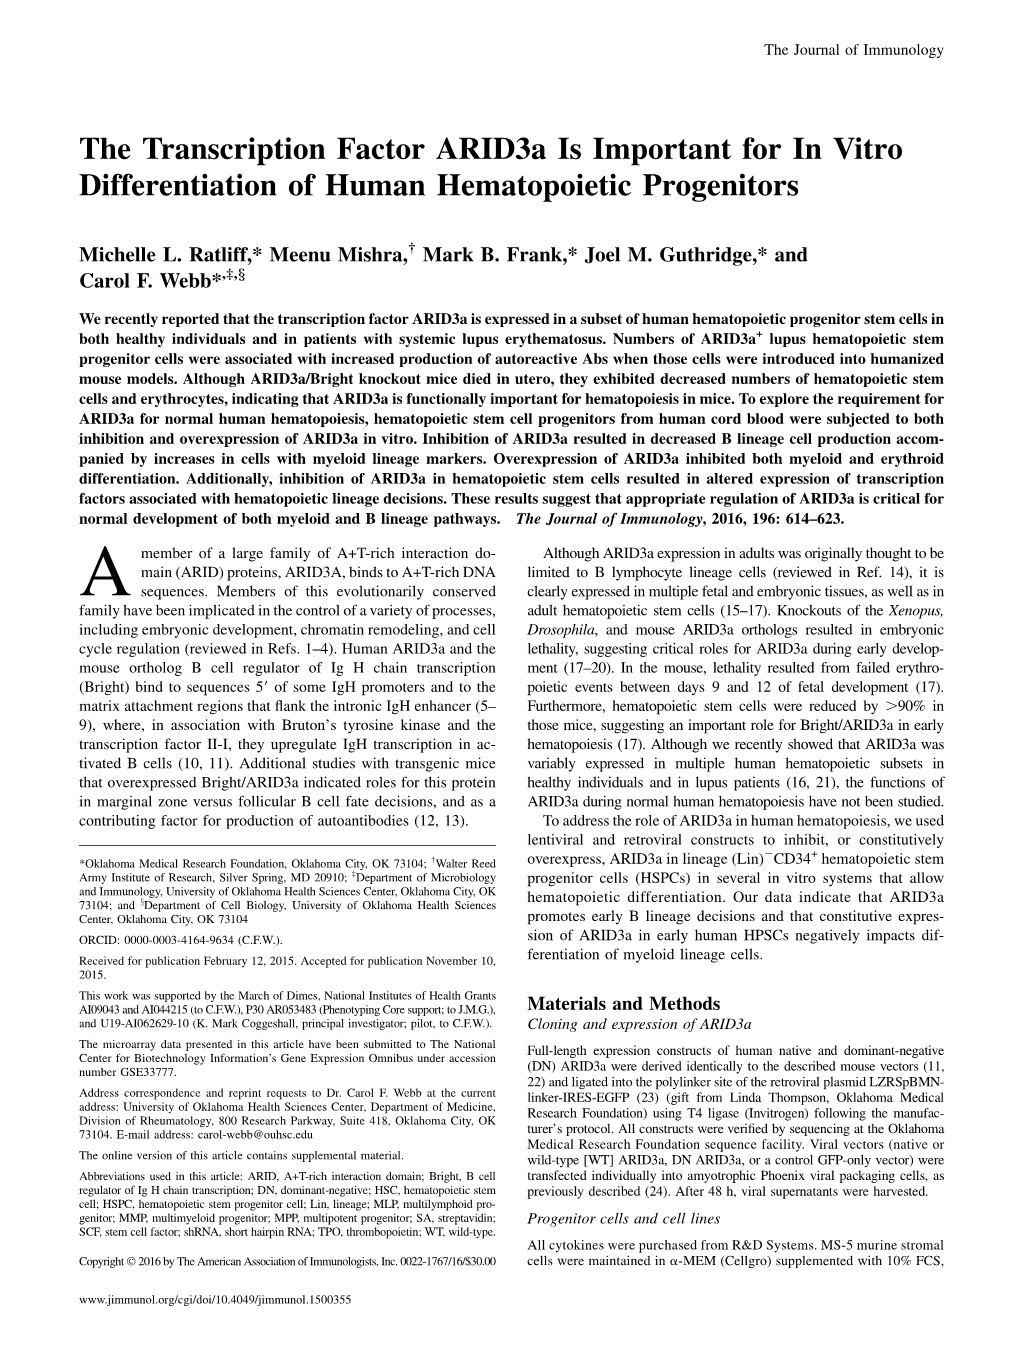 Human Hematopoietic Progenitors Important for in Vitro Differentiation